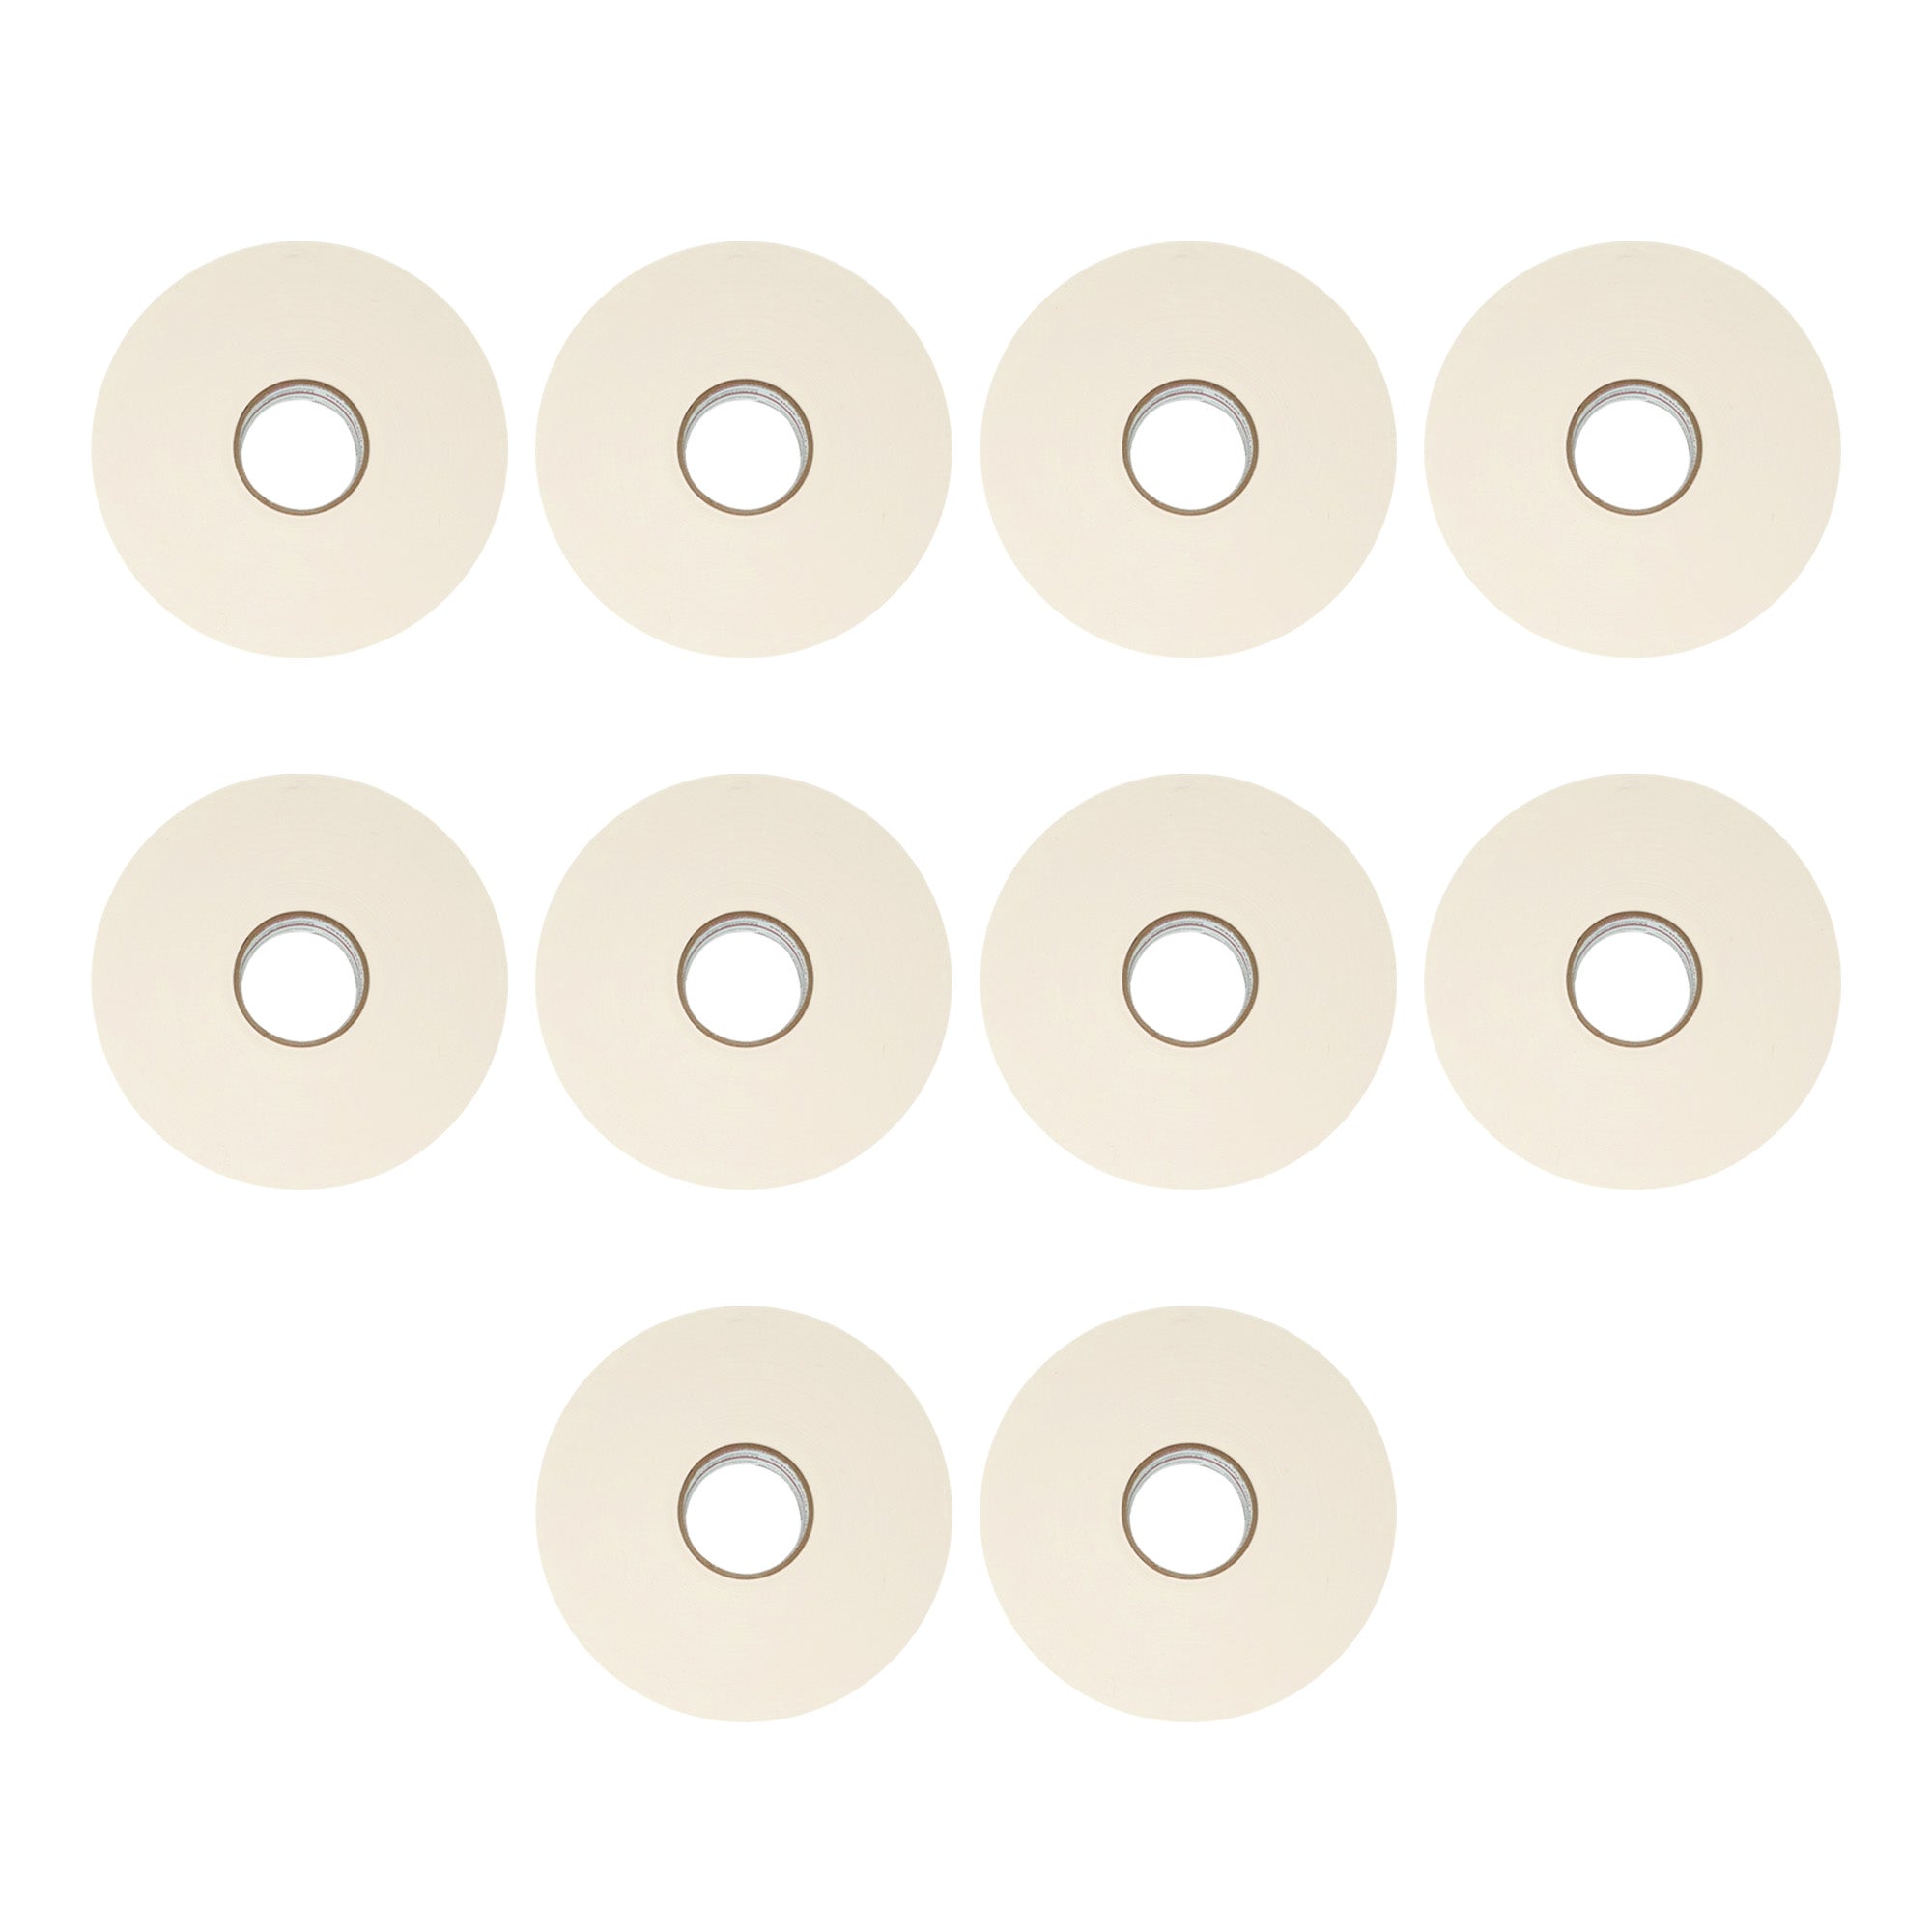 Ruban pour cloison sèche en papier USG Sheetrock 2-1/16″ x 500′